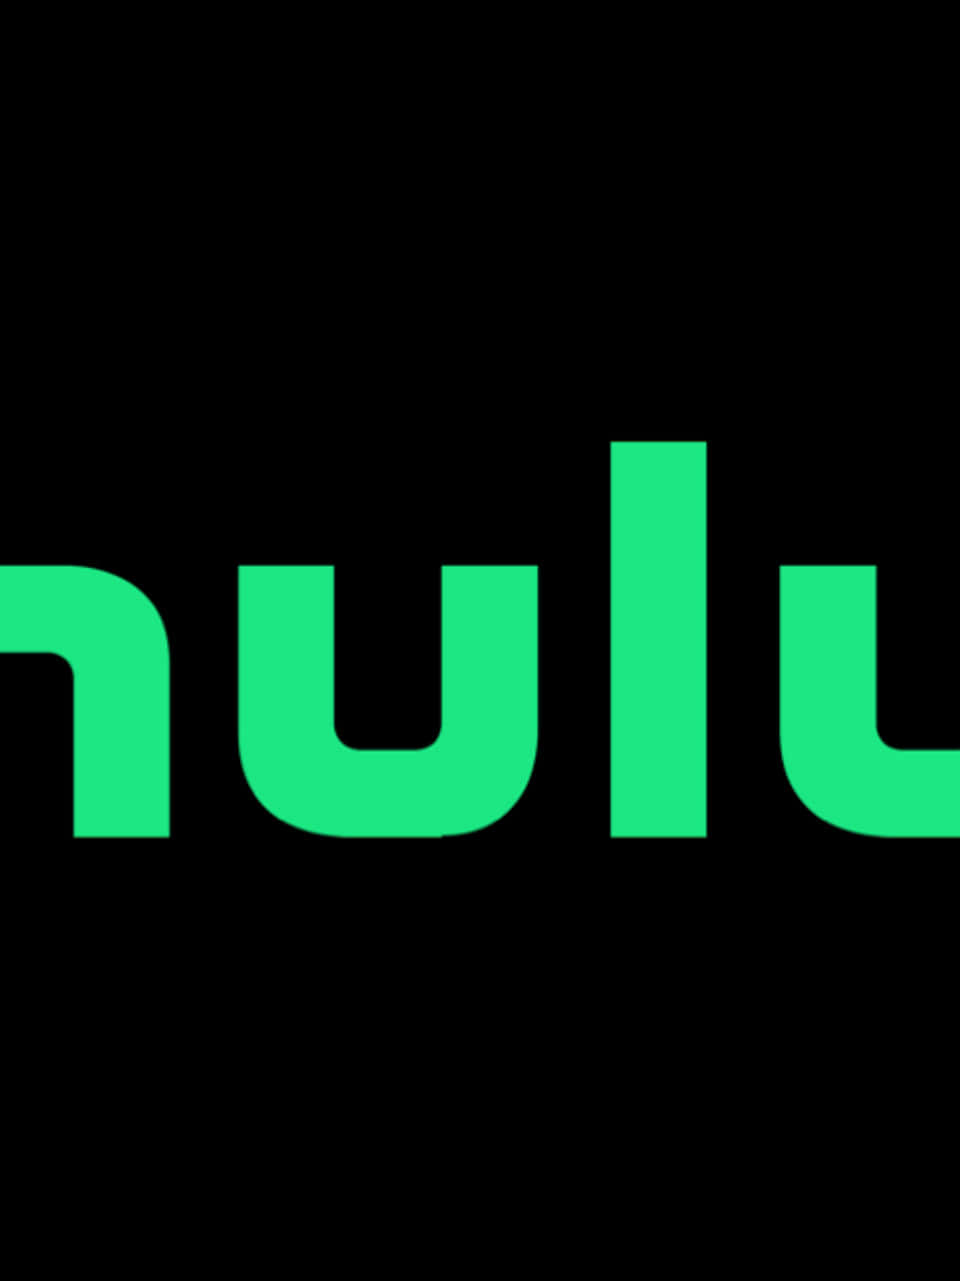 Logode Hulu Con Letras Verdes Sobre Un Fondo Negro